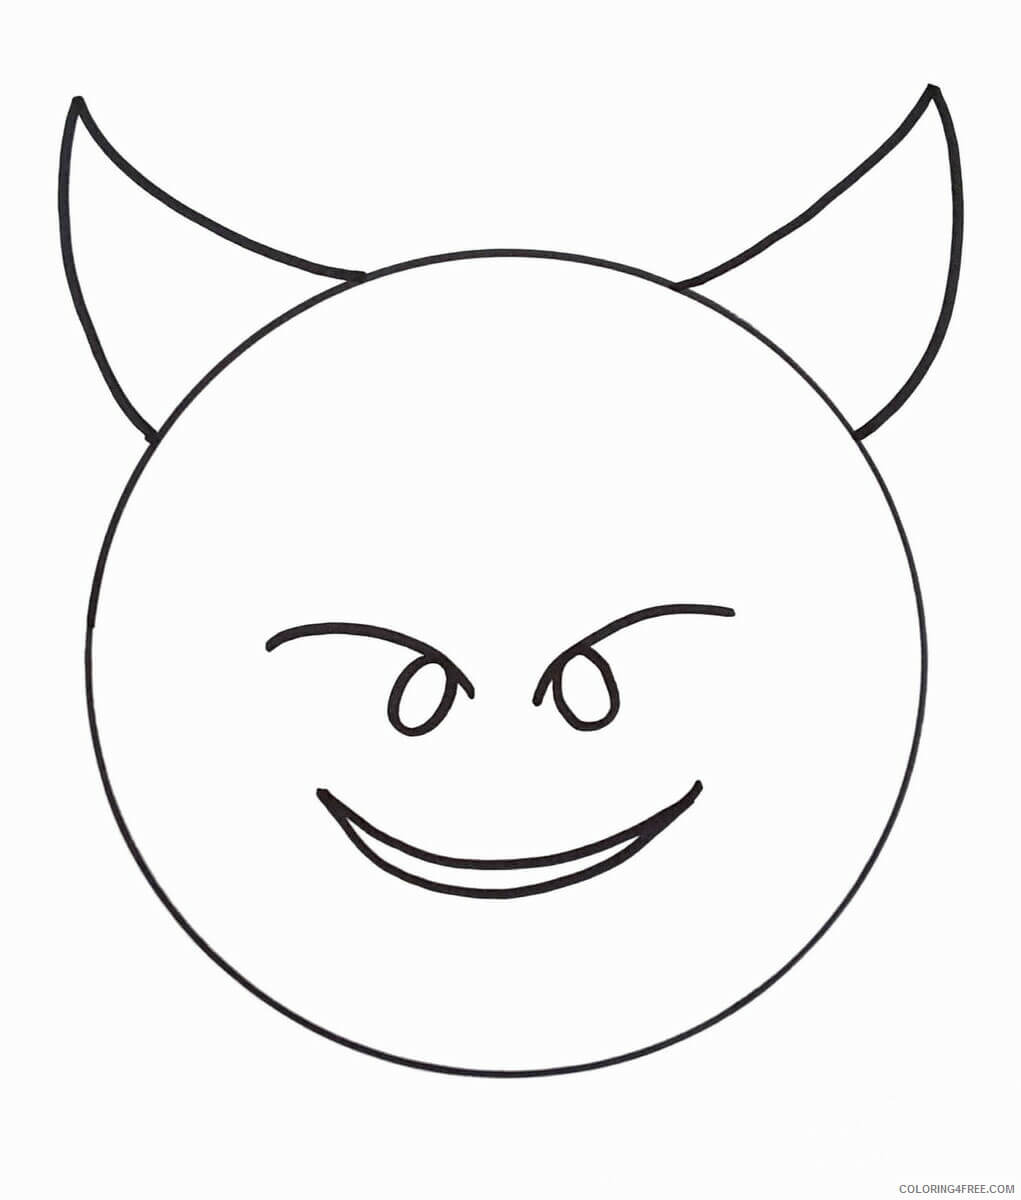 Dibujos de Demonio Emoji para colorear